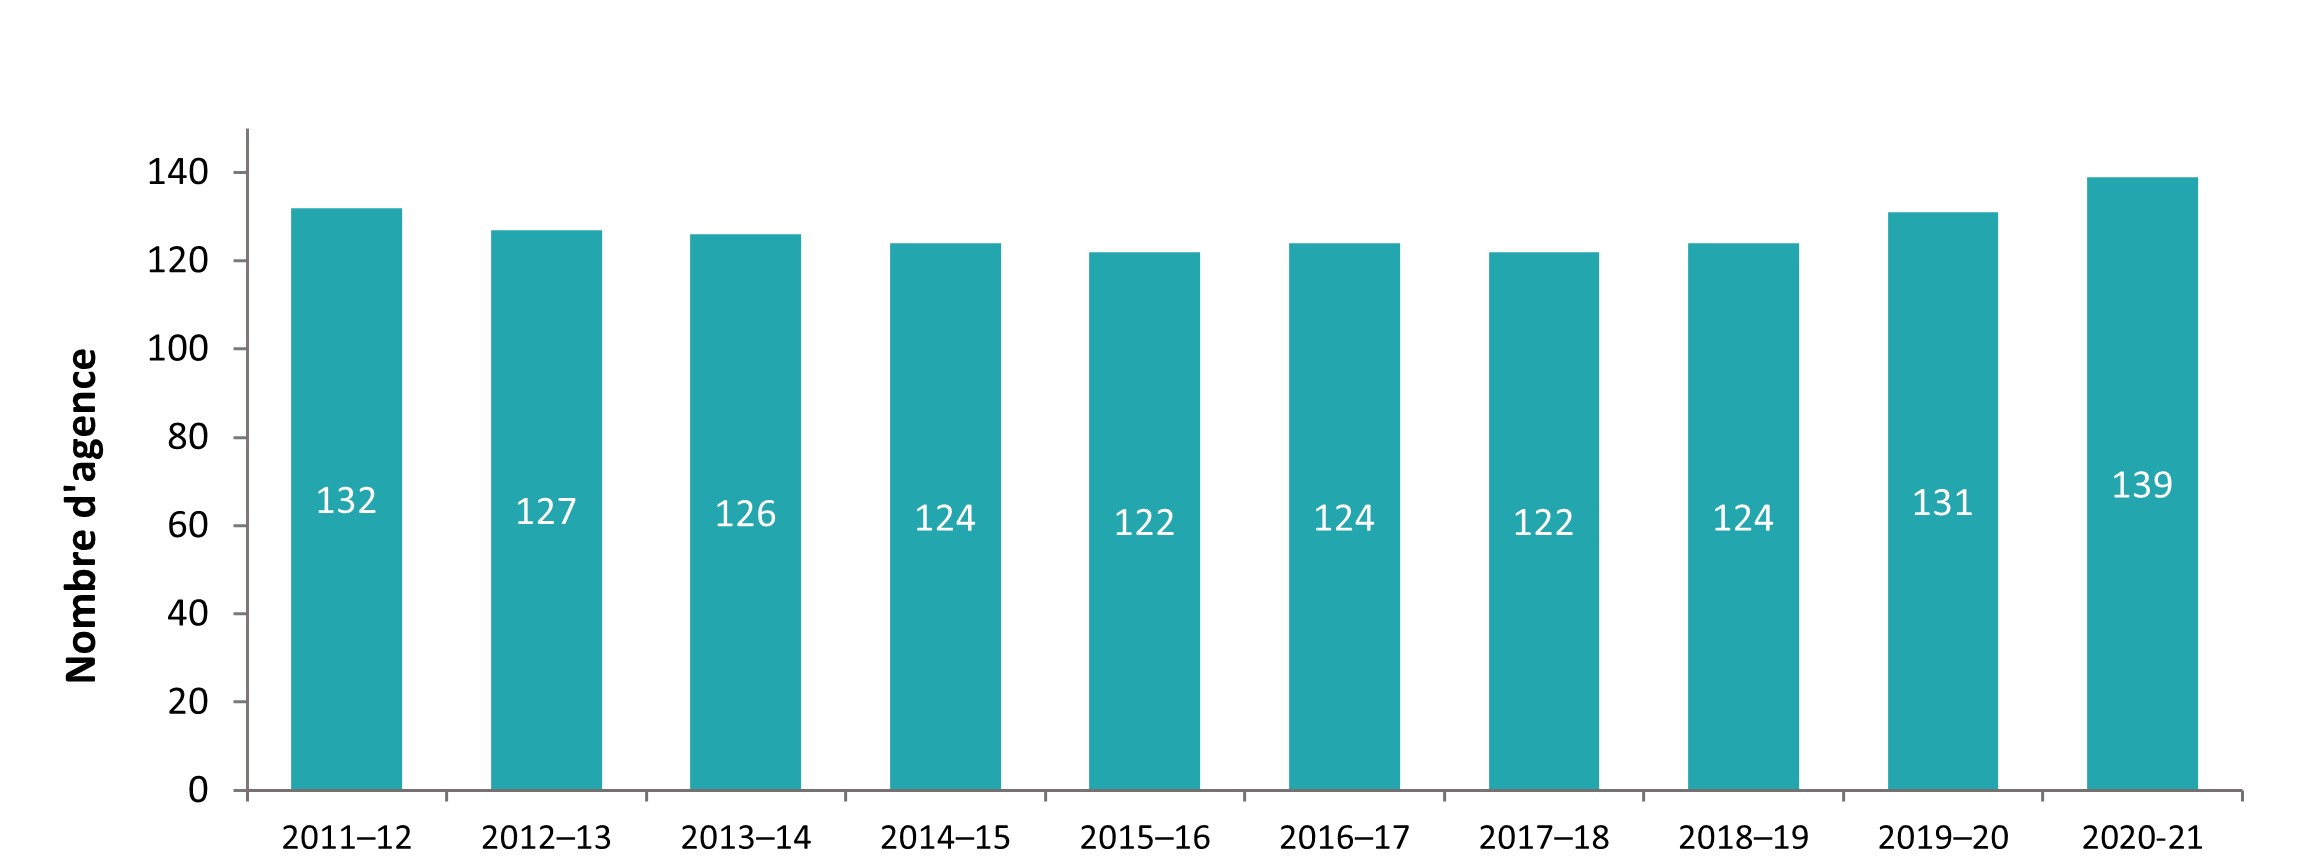 Agences de services de garde en milieu familial agréées et domiciles approuvés, de 2011-2012 a 2020-2021